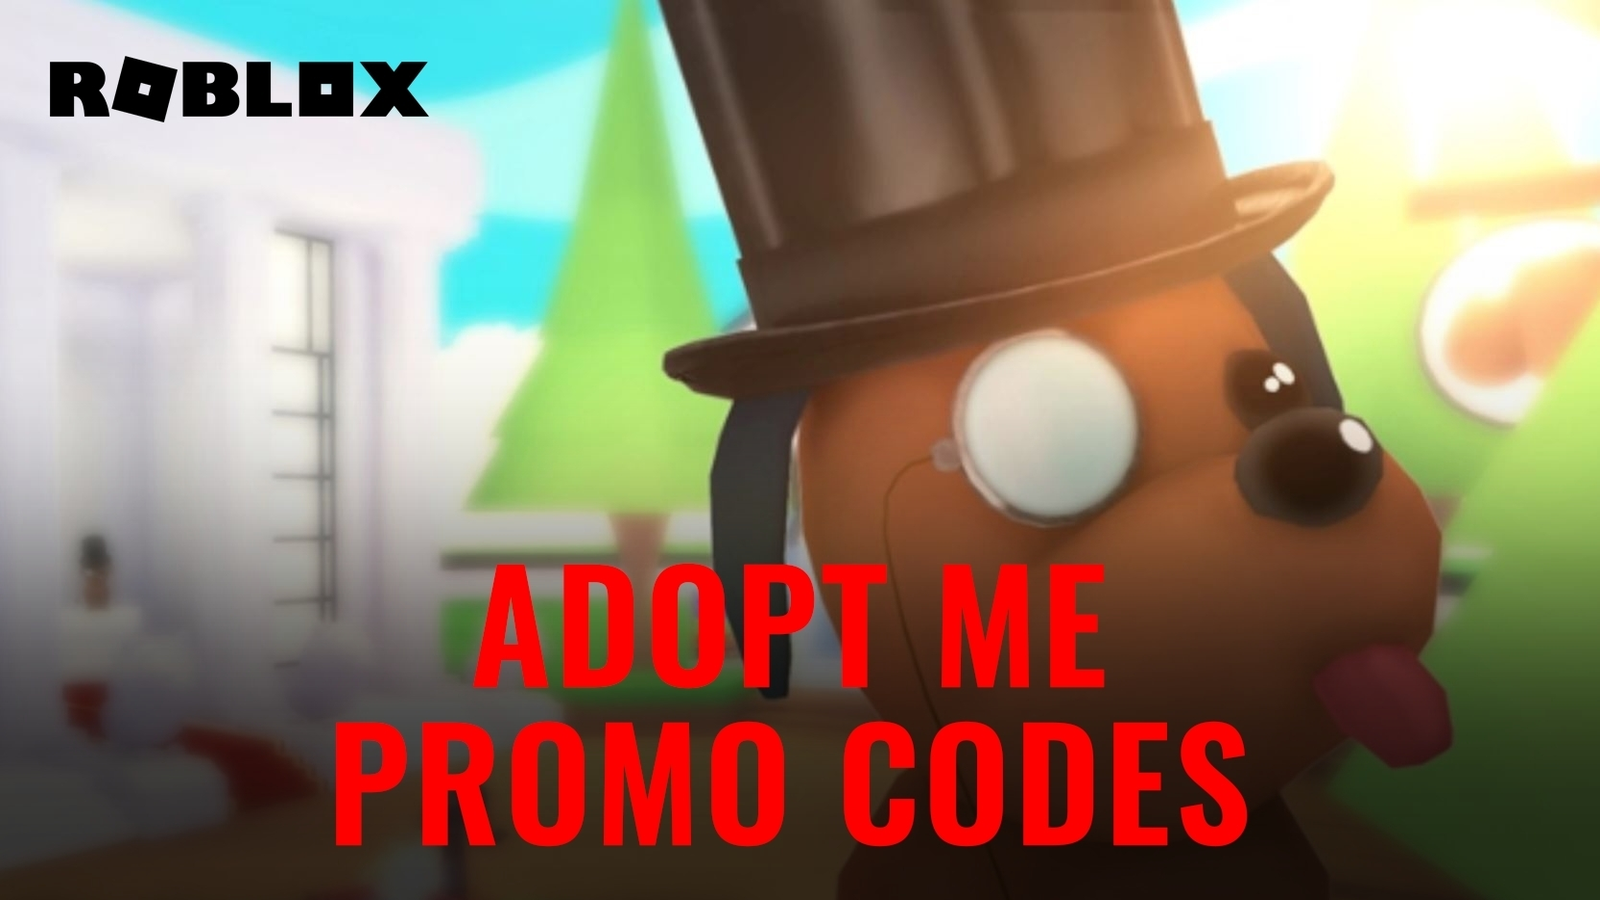 Roblox - Promo Codes Outubro 2021